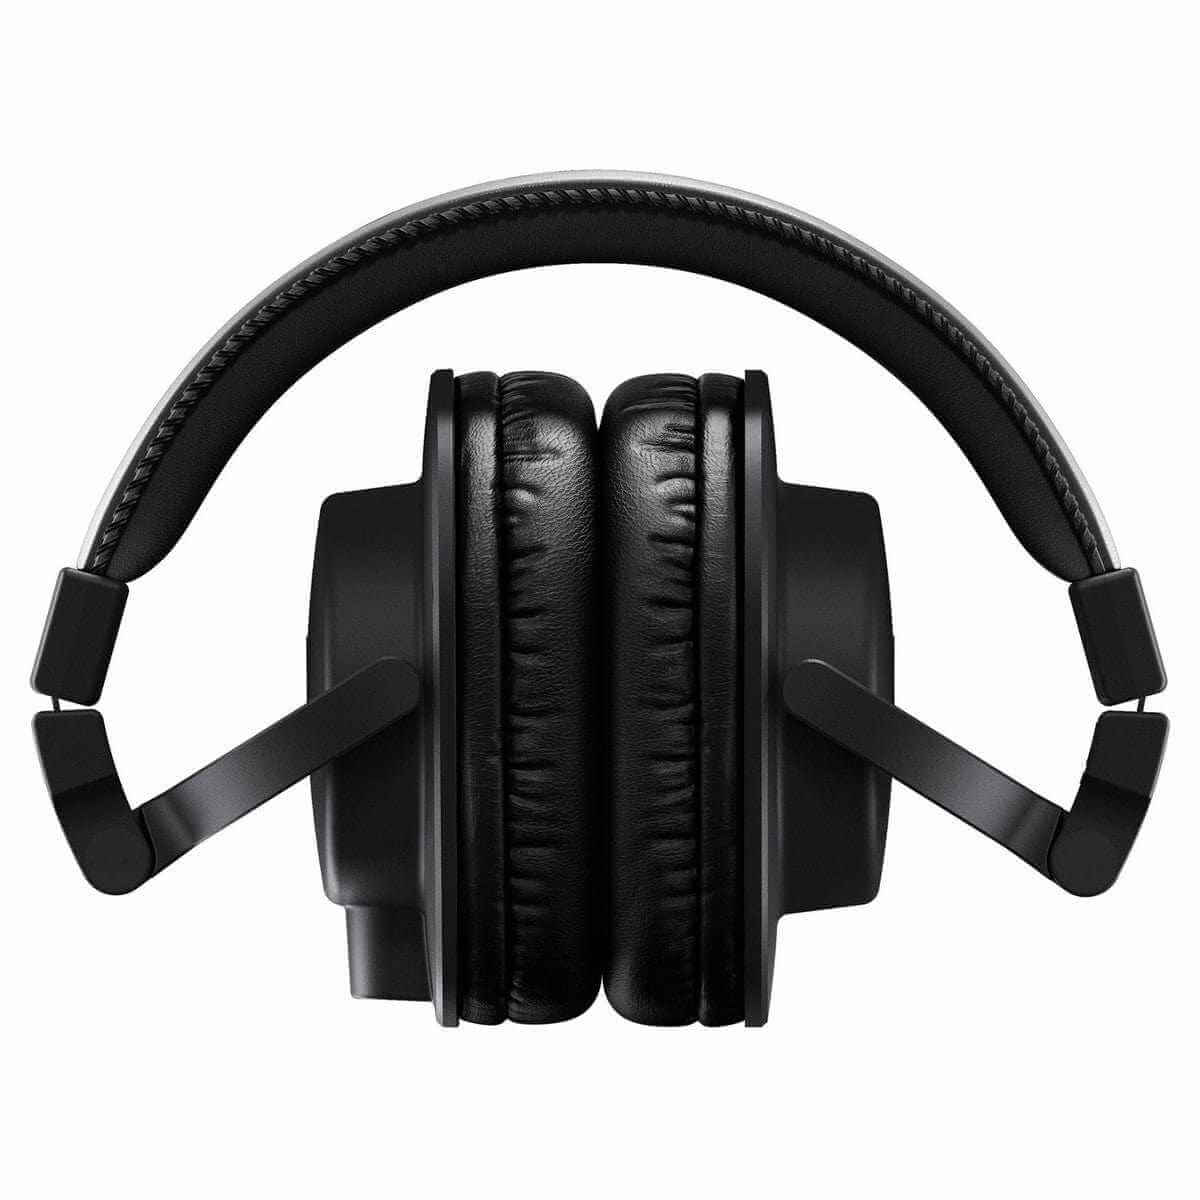 Shure Pro Audio Yamaha HPH MT5 Studio reference headphones